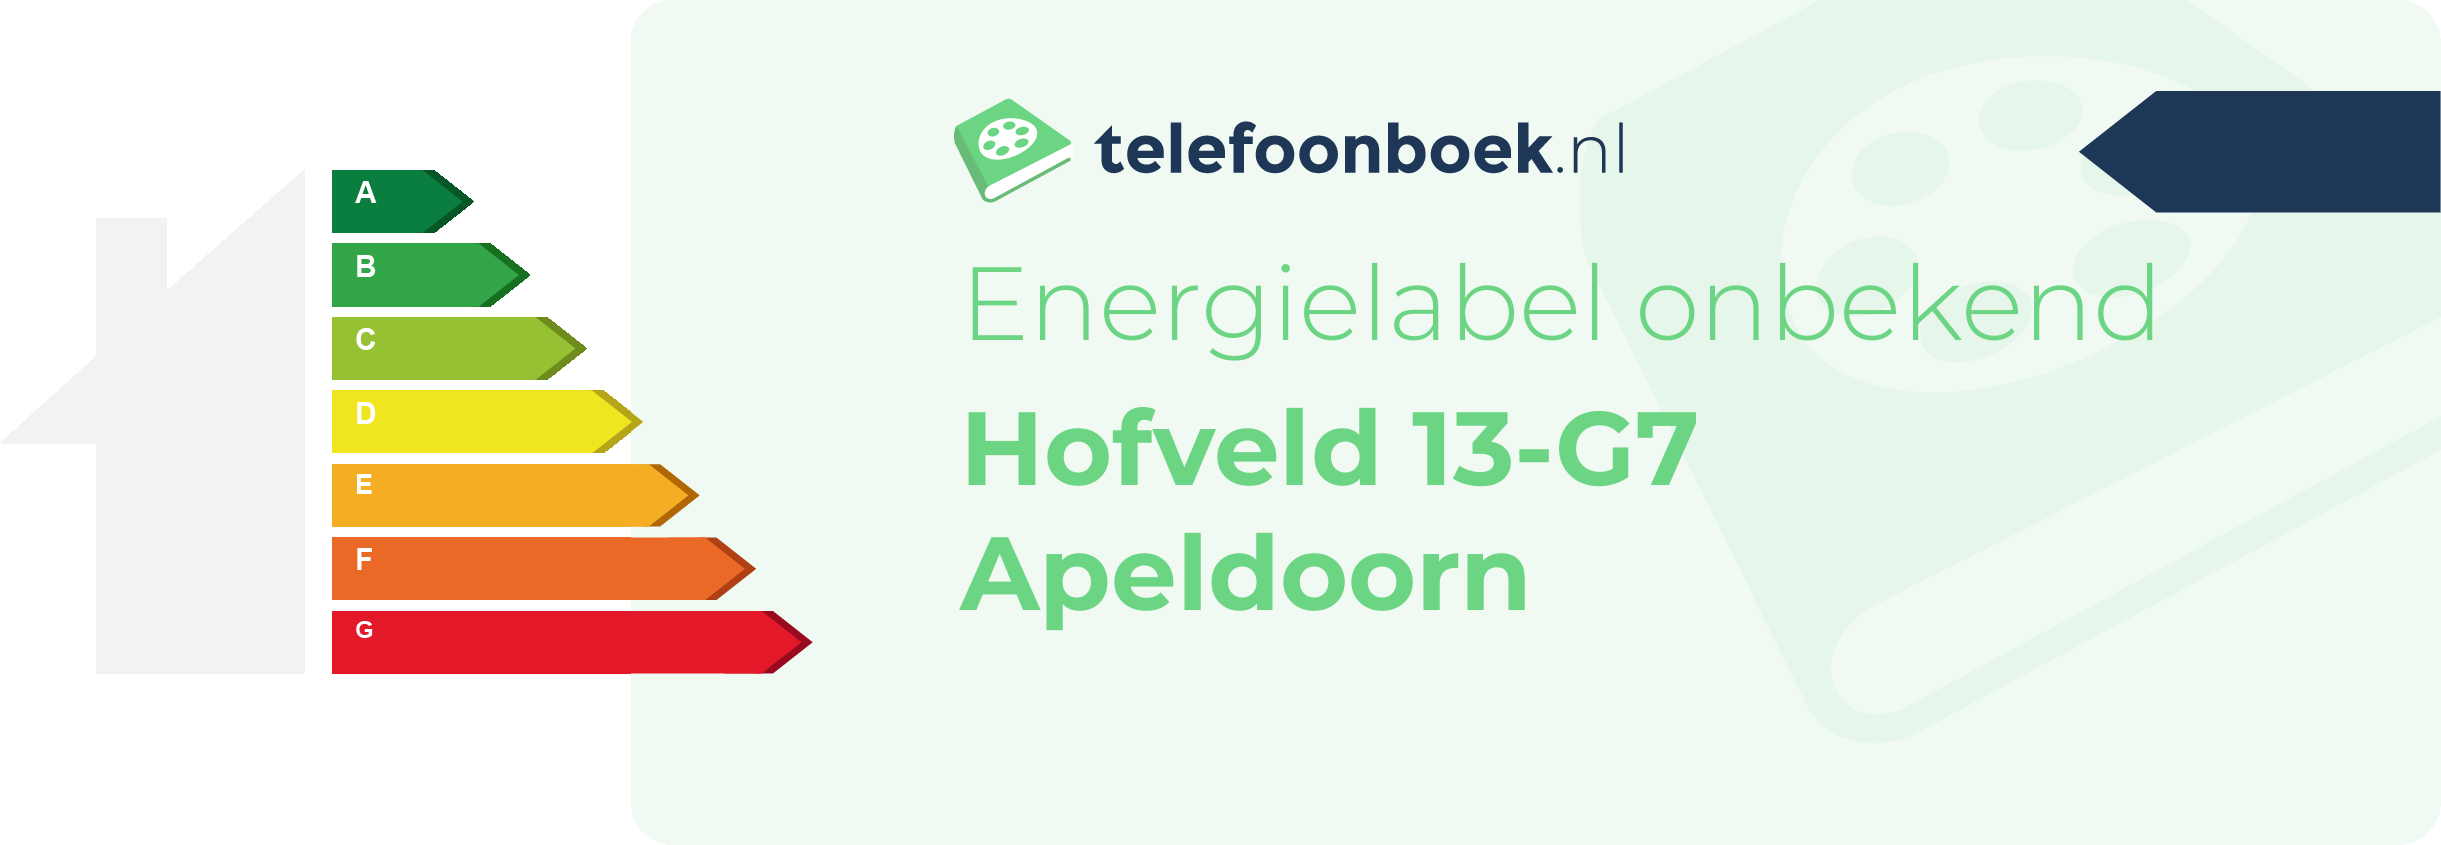 Energielabel Hofveld 13-G7 Apeldoorn